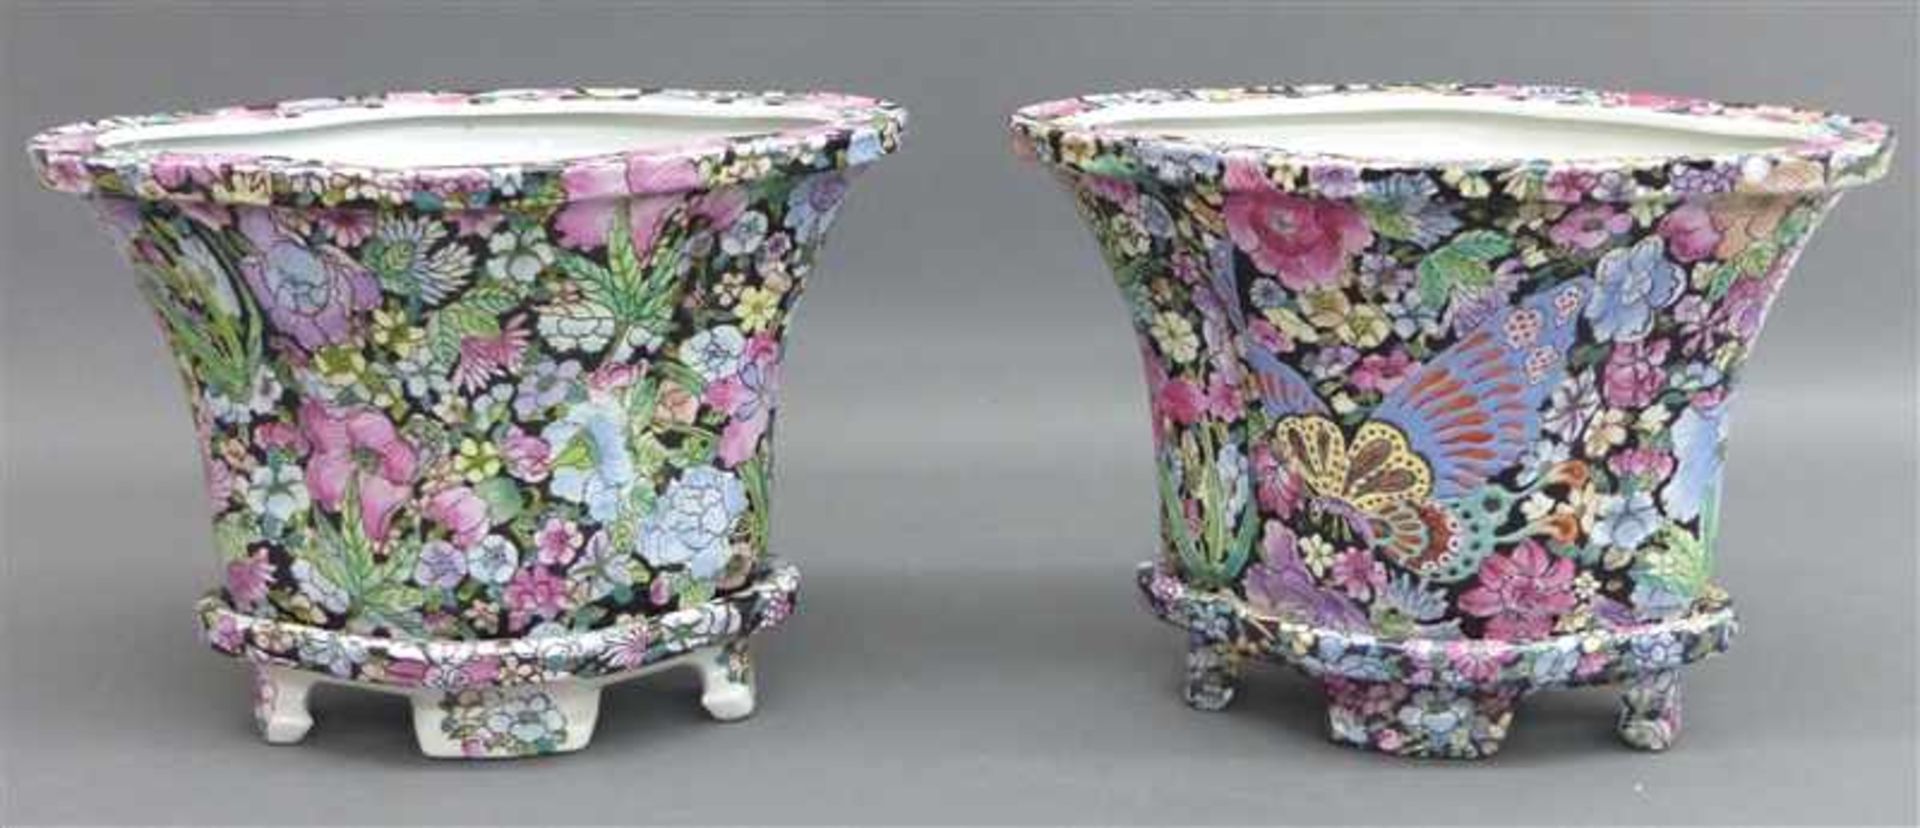 Paar PorzellanvasenChina, 20. Jh., reicher floraler Dekor auf Porzellansockel, Gesamthöhe 26 cm, b